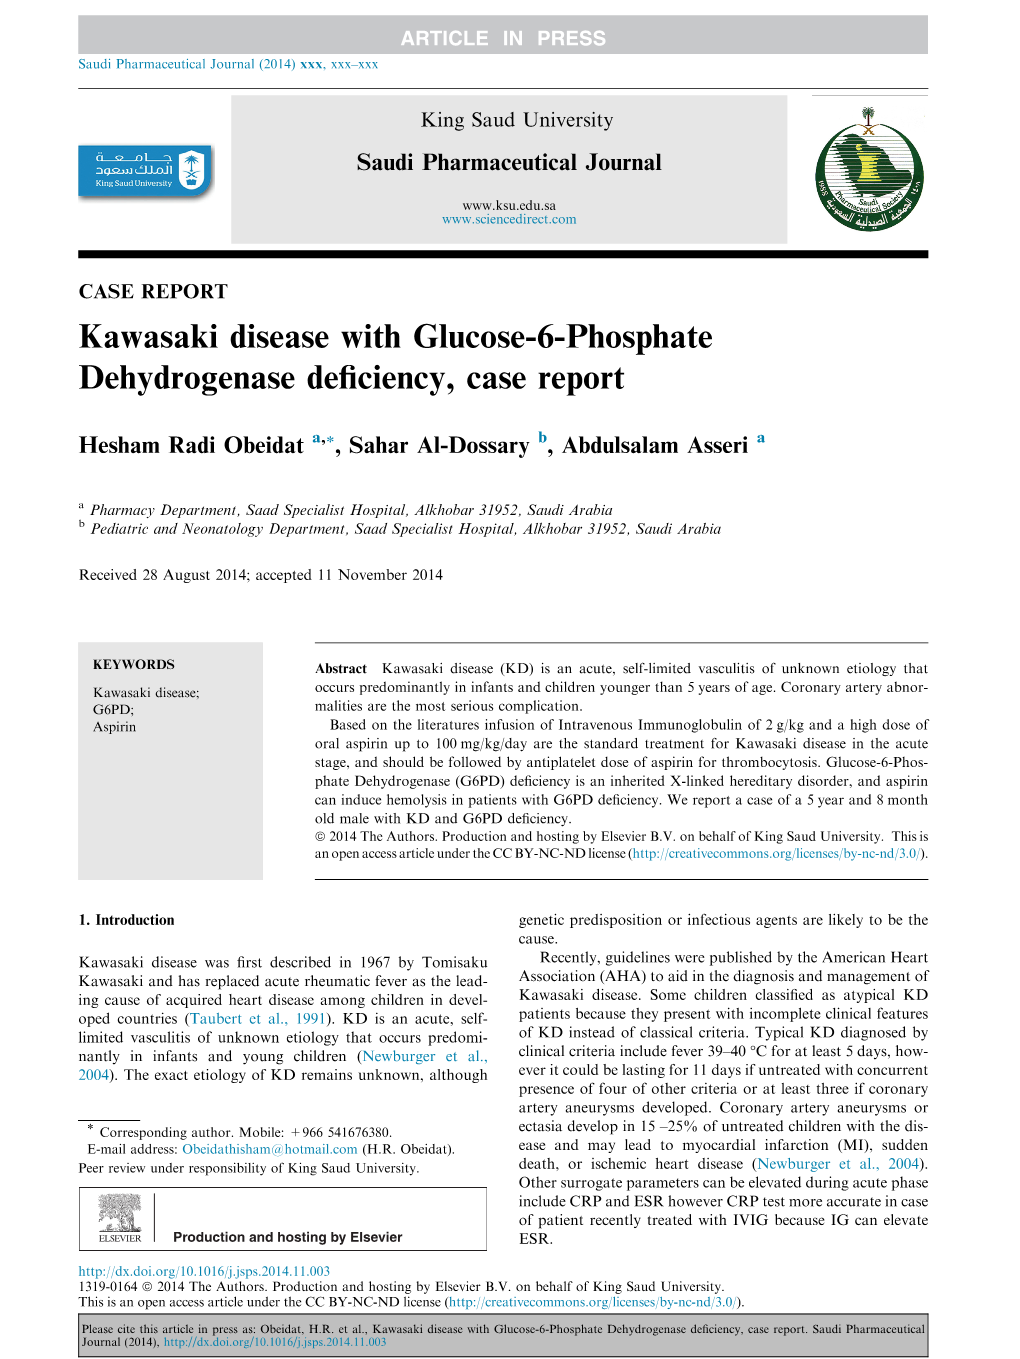 Kawasaki Disease with Glucose-6-Phosphate Dehydrogenase Deﬁciency, Case Report